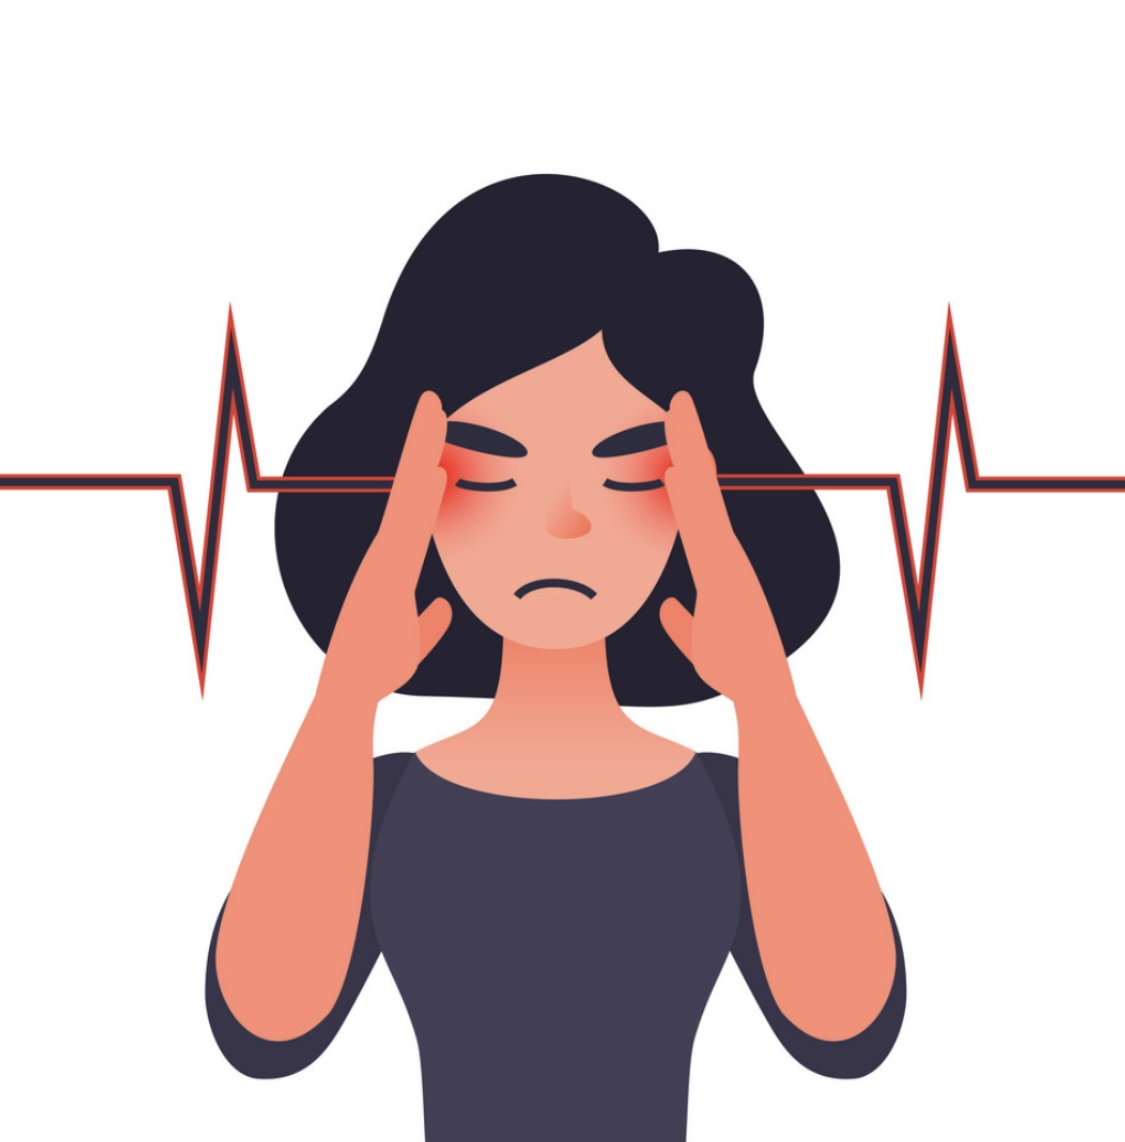 Психосоматика: причины головной боли и мигрени!